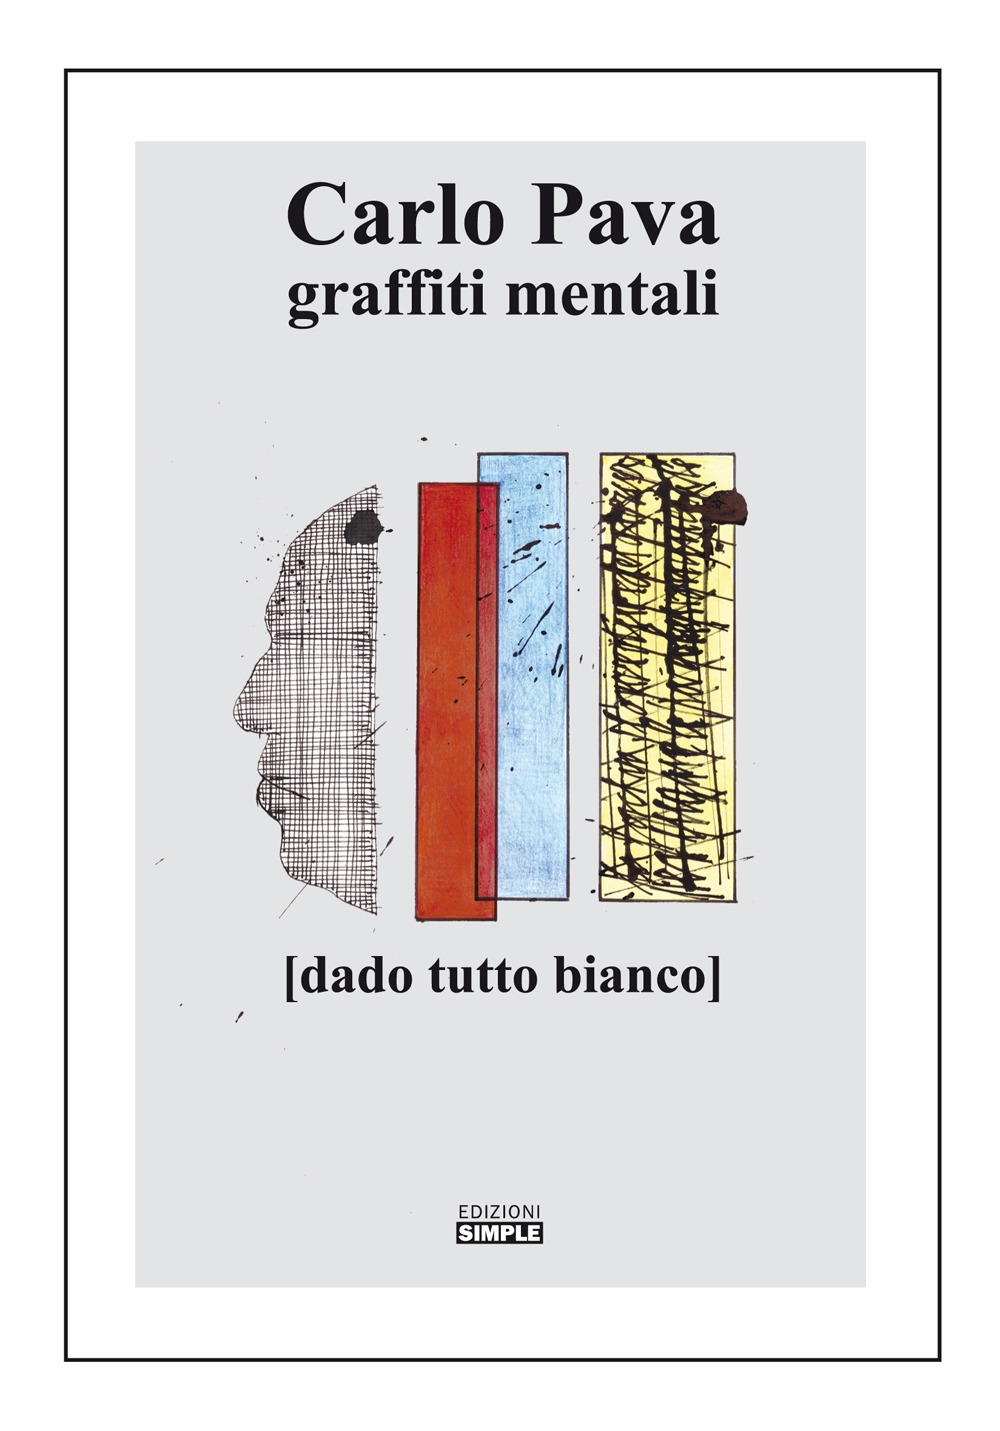 Libri Aldo Rainaldi - Le Lucertole Terribili NUOVO SIGILLATO, EDIZIONE DEL 01/10/2019 SUBITO DISPONIBILE